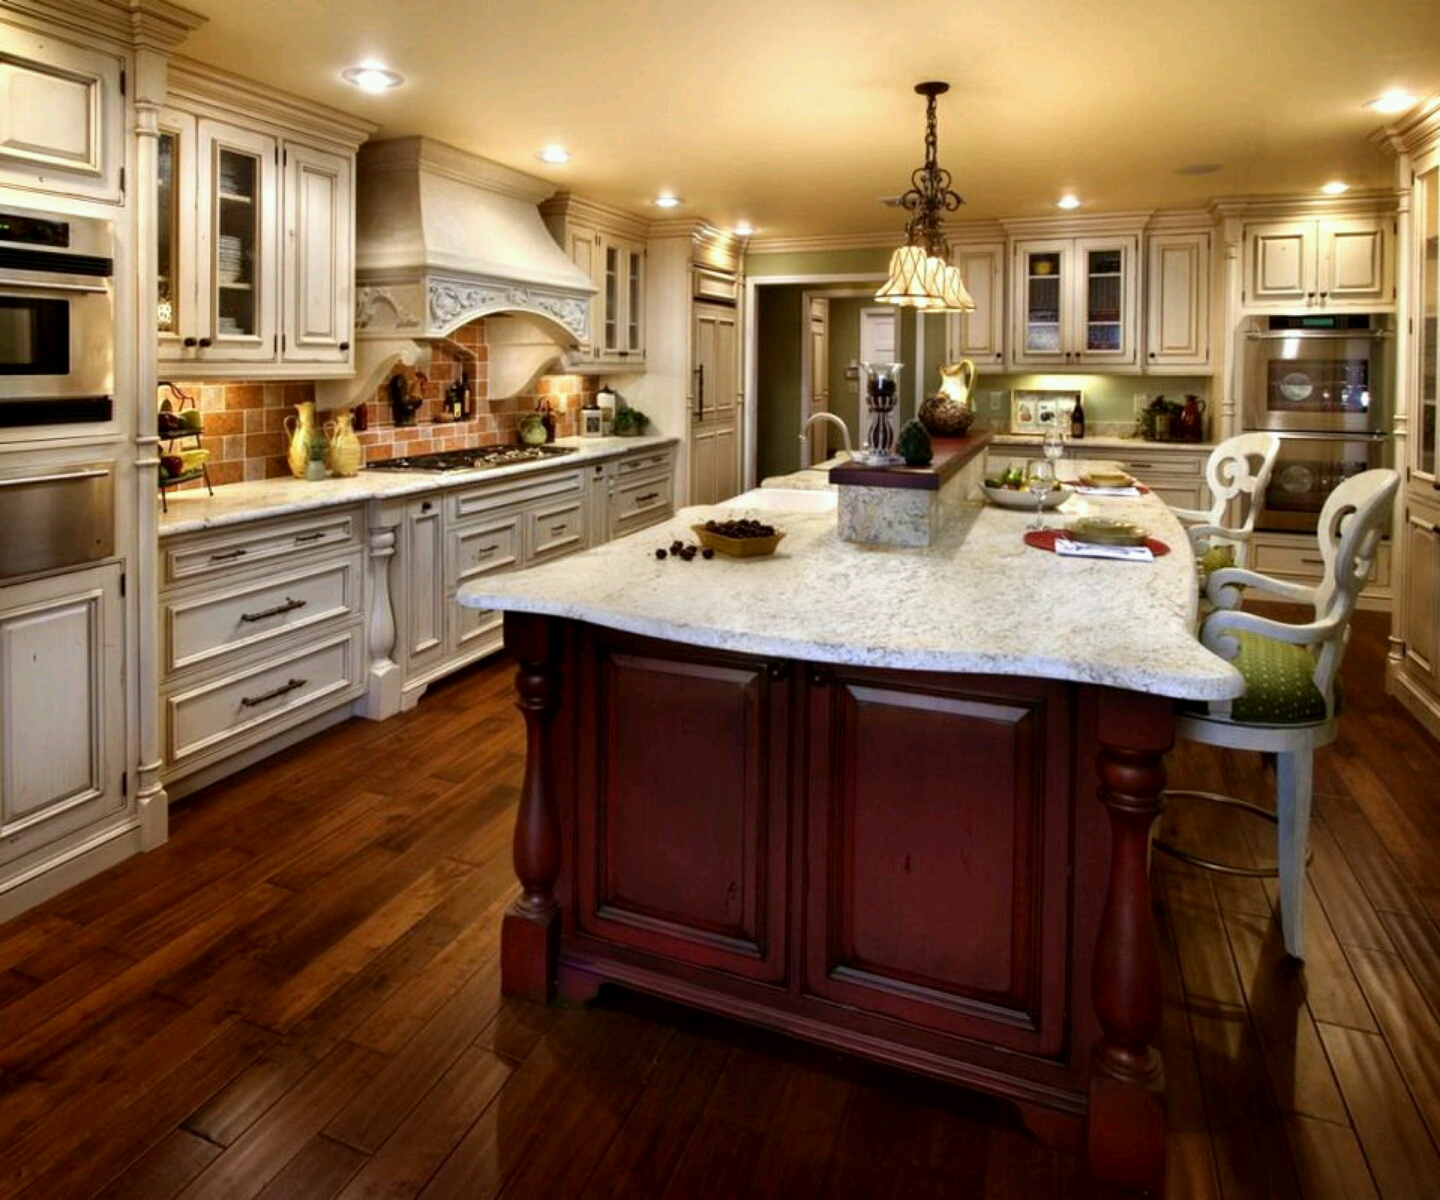  Luxury kitchen modern kitchen cabinets designs 